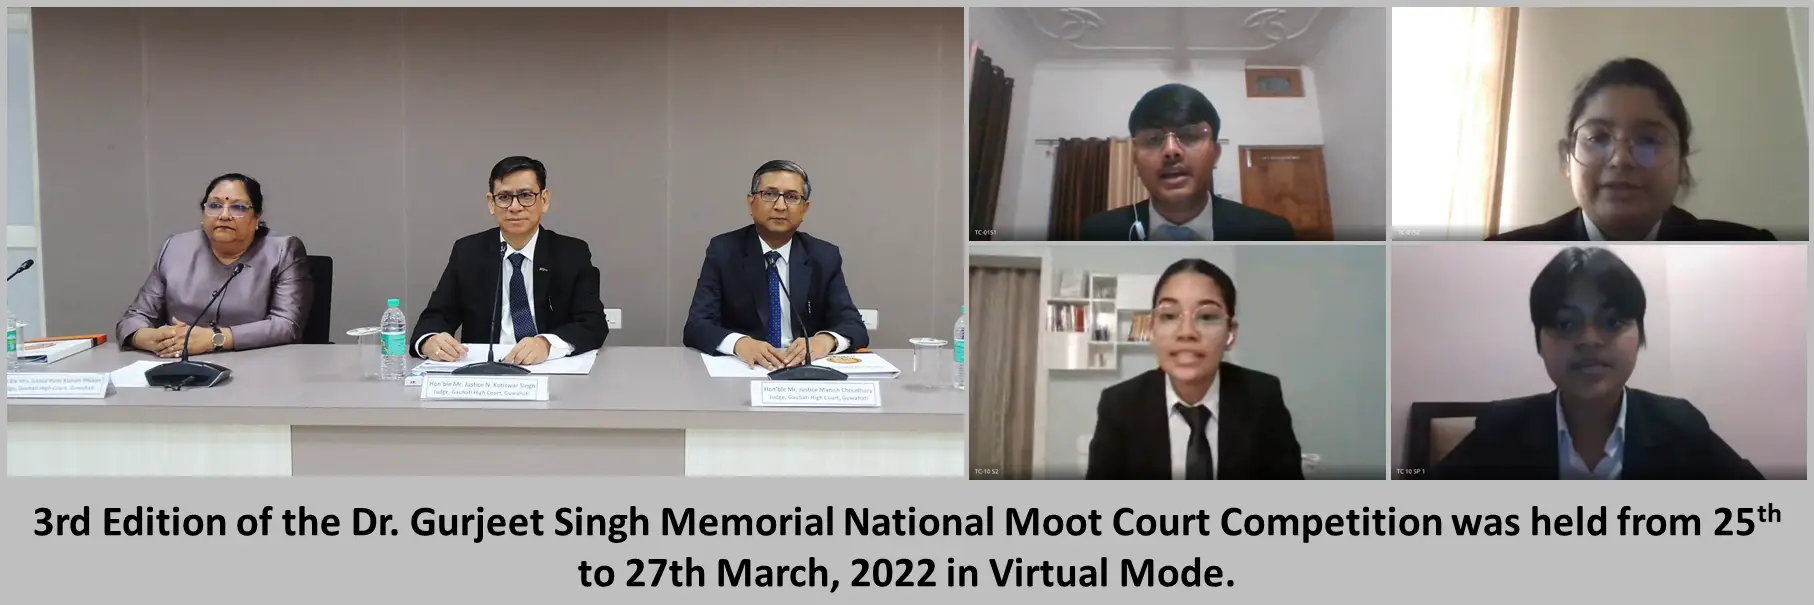 Moot Court at NLUJA Assam